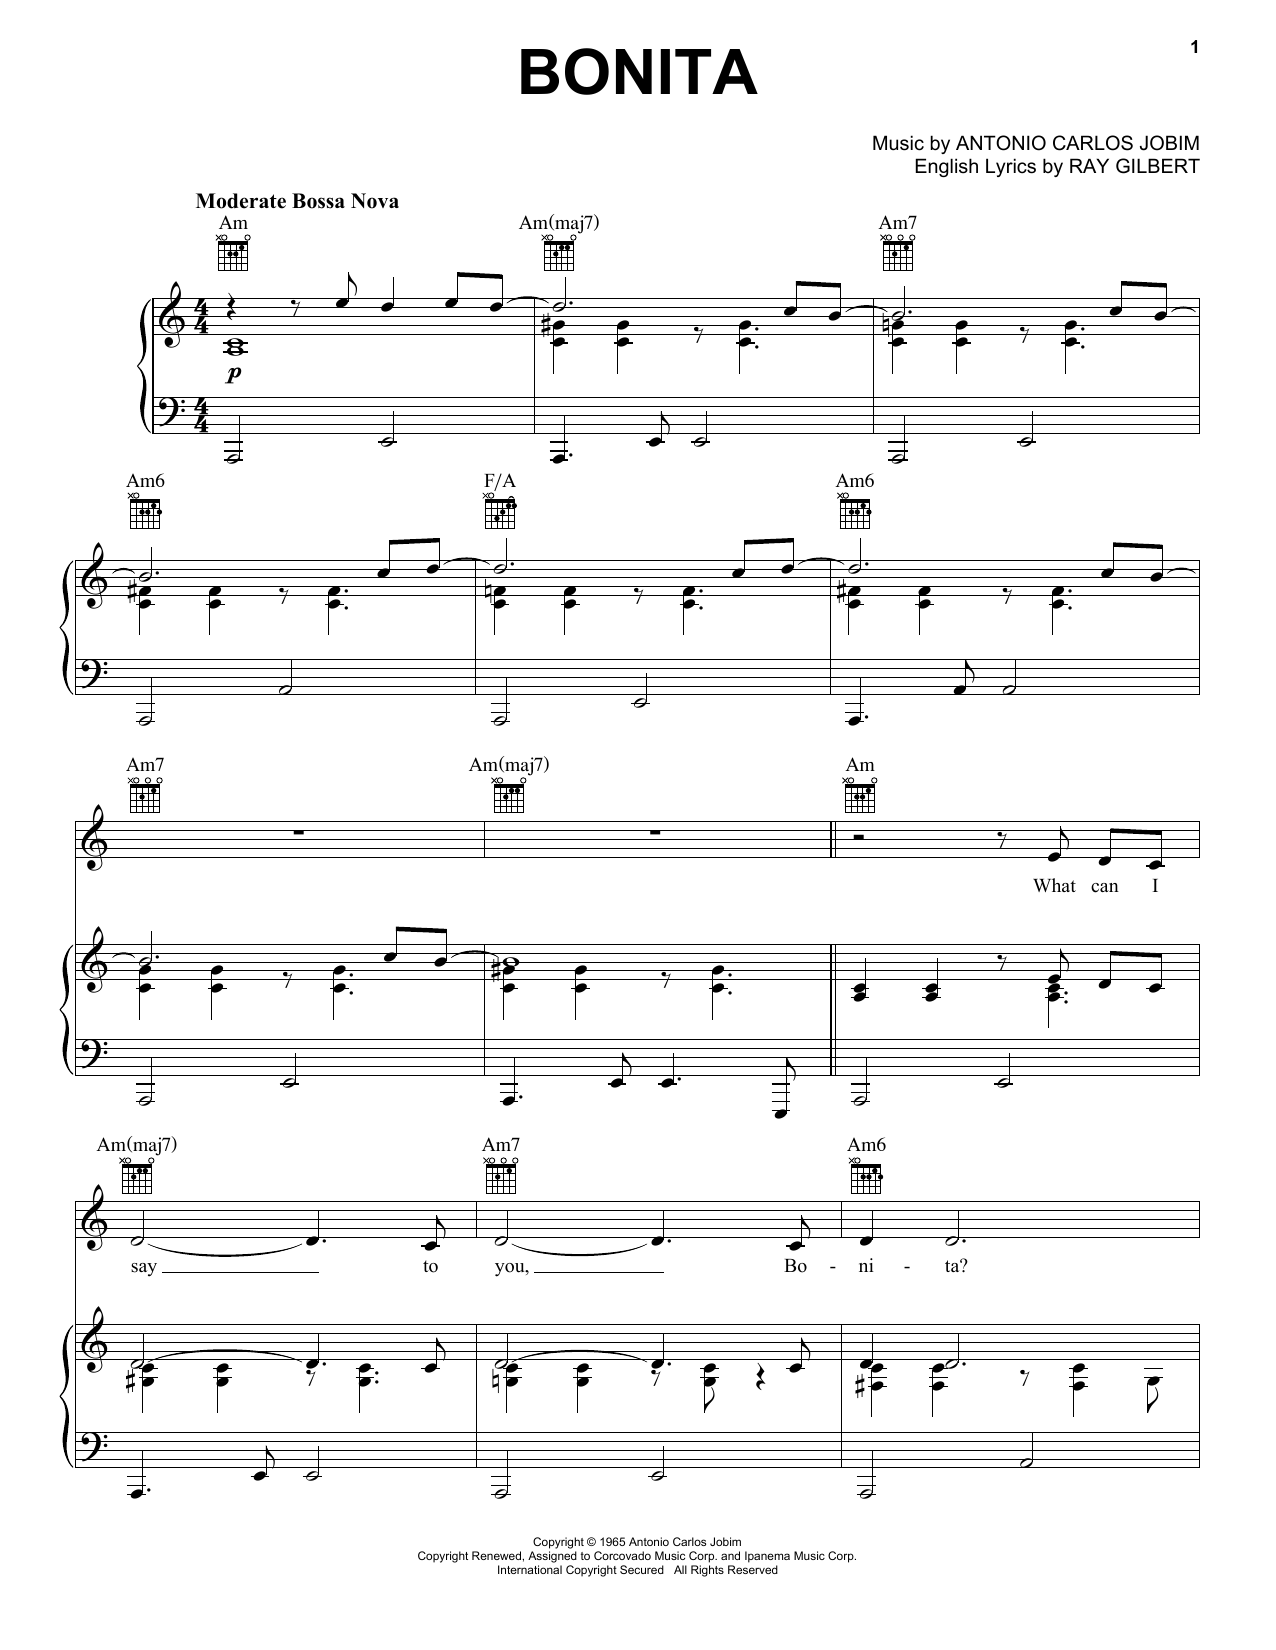 Antonio Carlos Jobim Bonita Sheet Music Notes & Chords for Piano, Vocal & Guitar (Right-Hand Melody) - Download or Print PDF